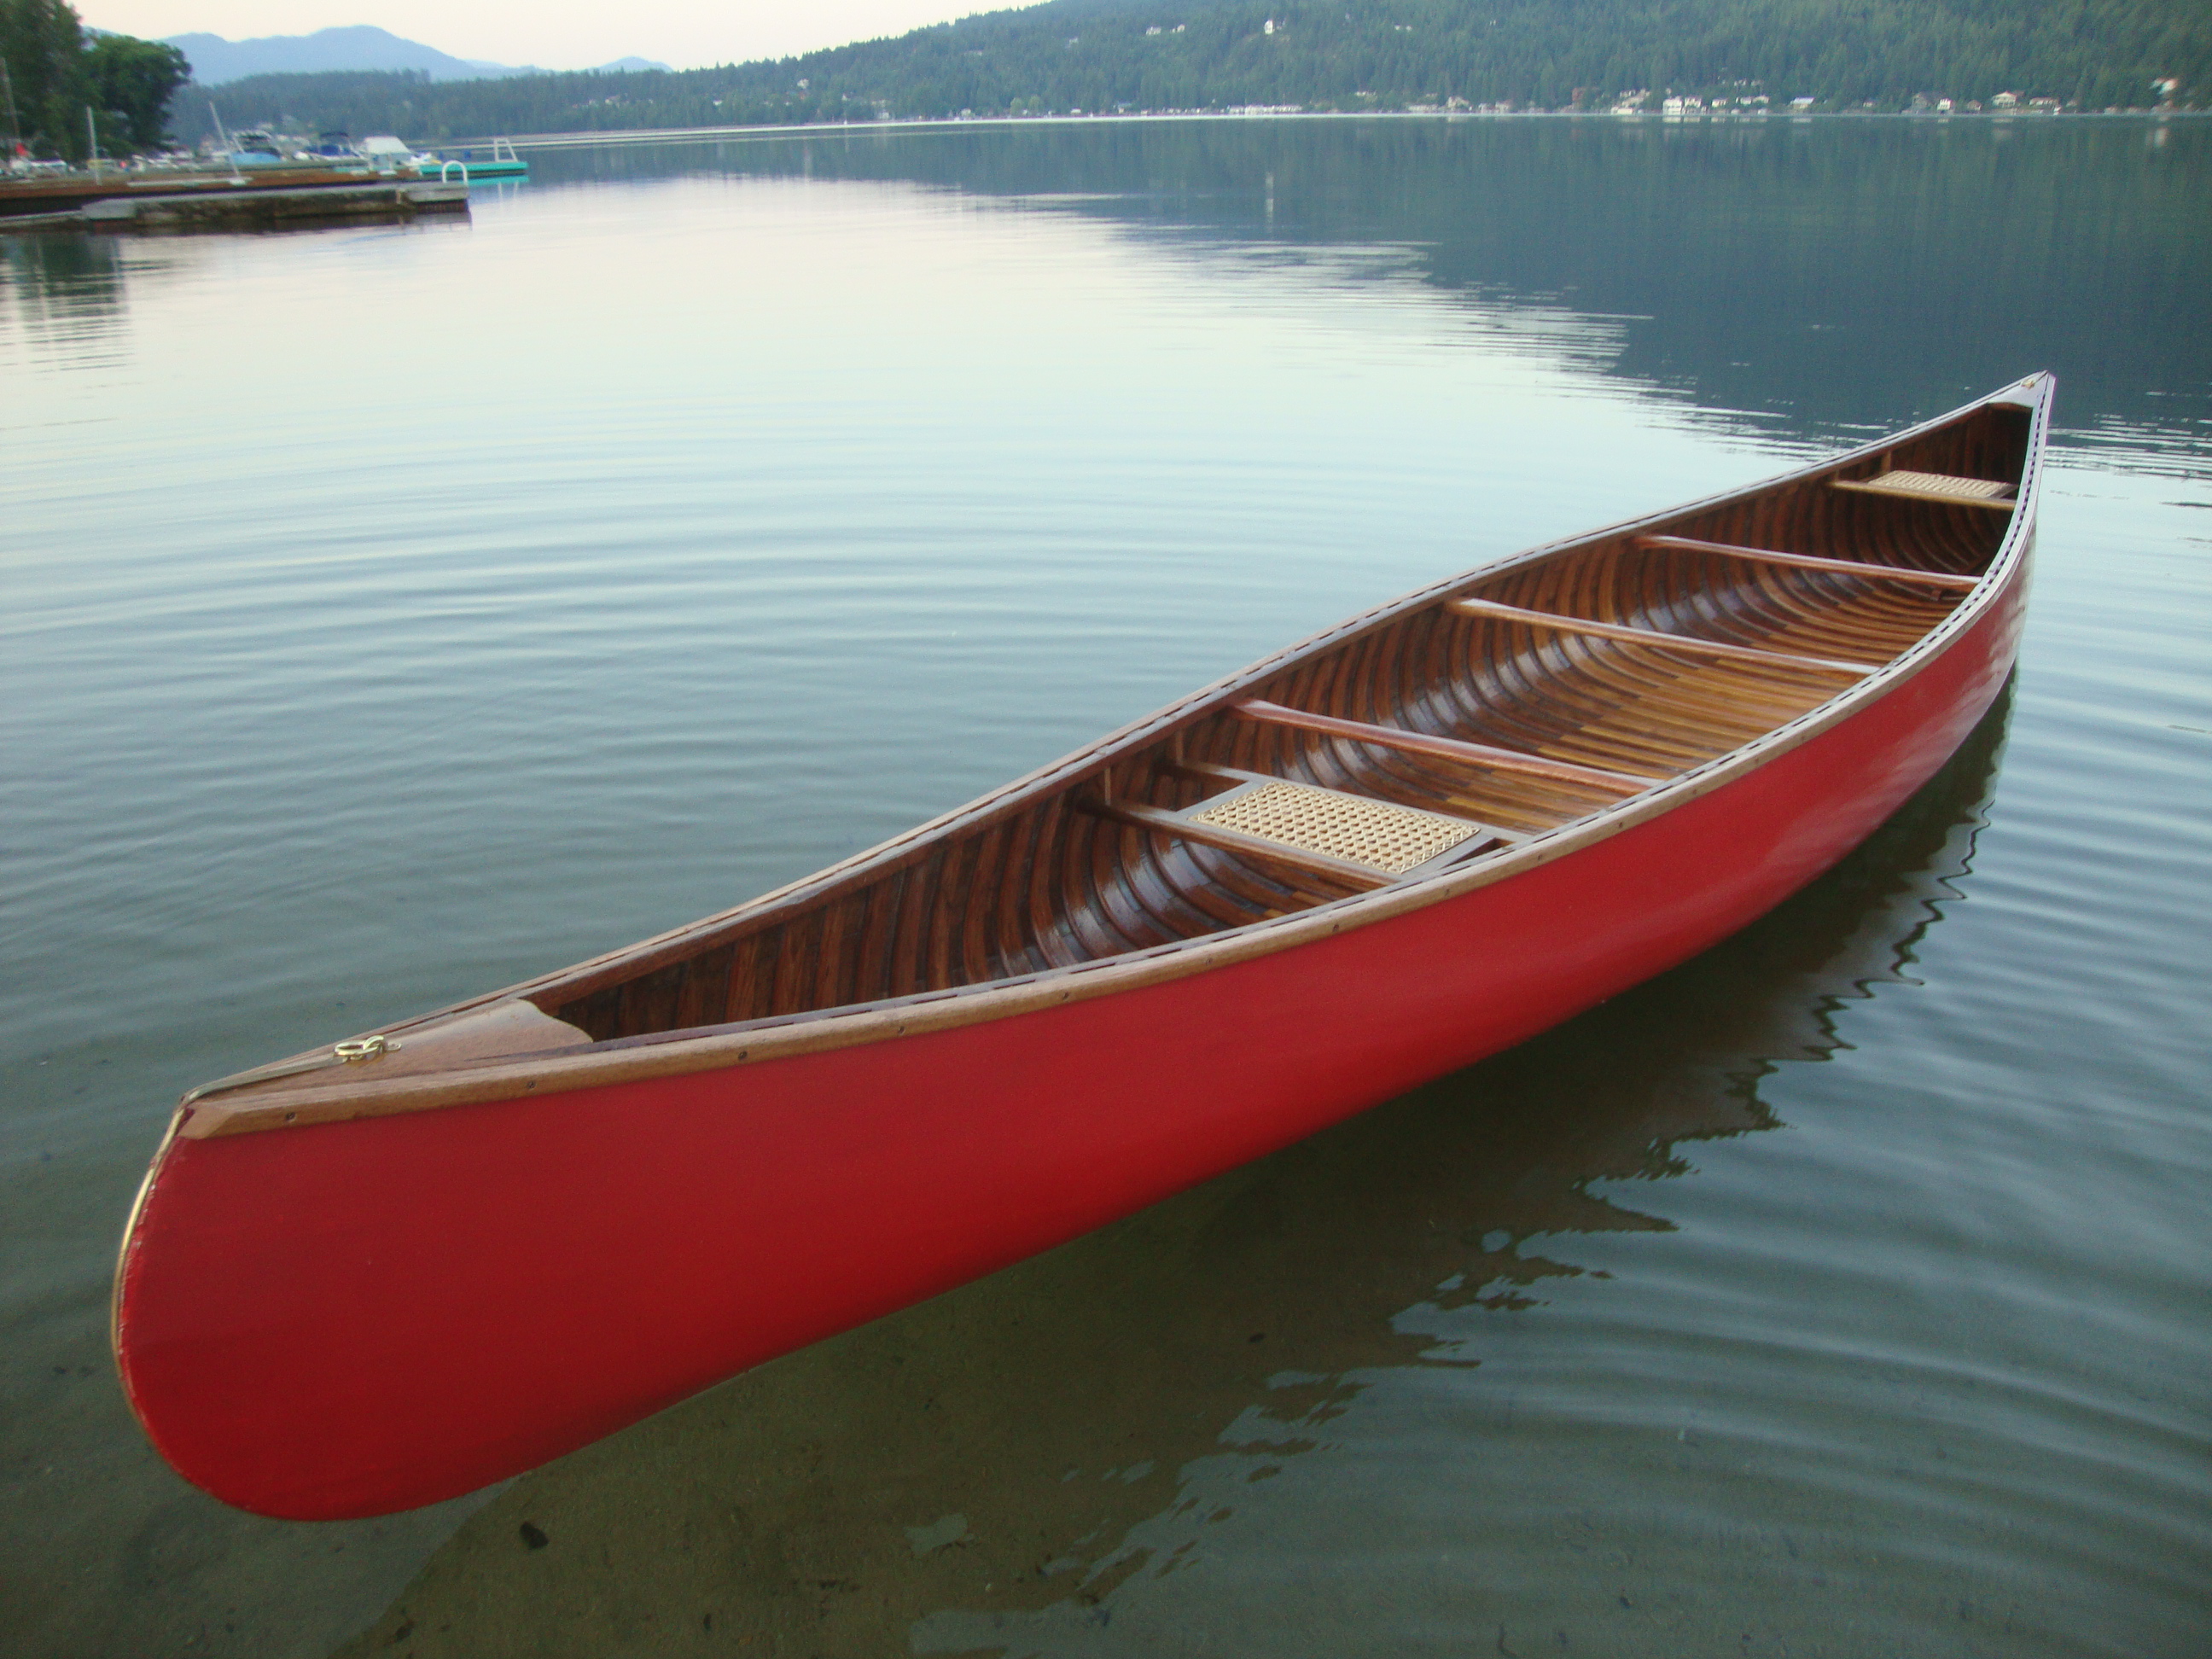 Greenwood canoes Canoeguy's Blog